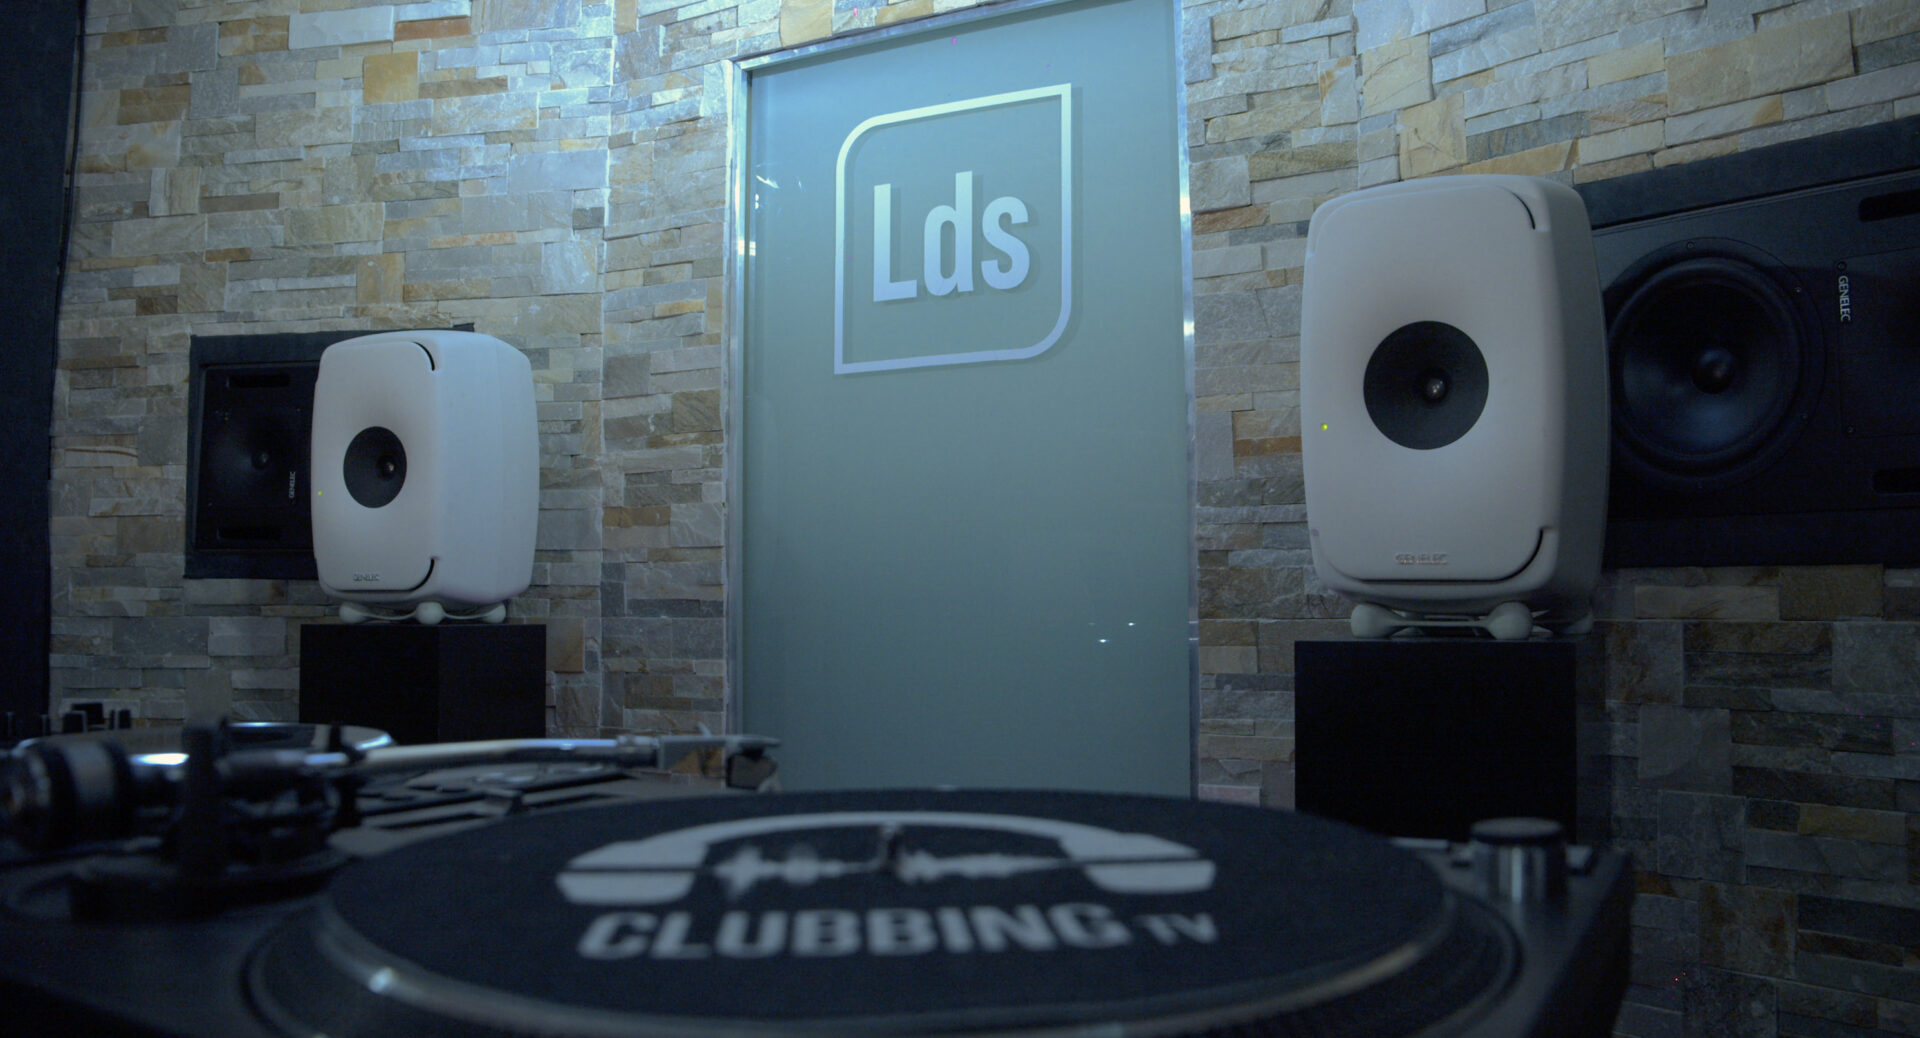 Le studio Lds de Clubbing TV ouvre ses portes aux DJs en herbe et aux collectifs